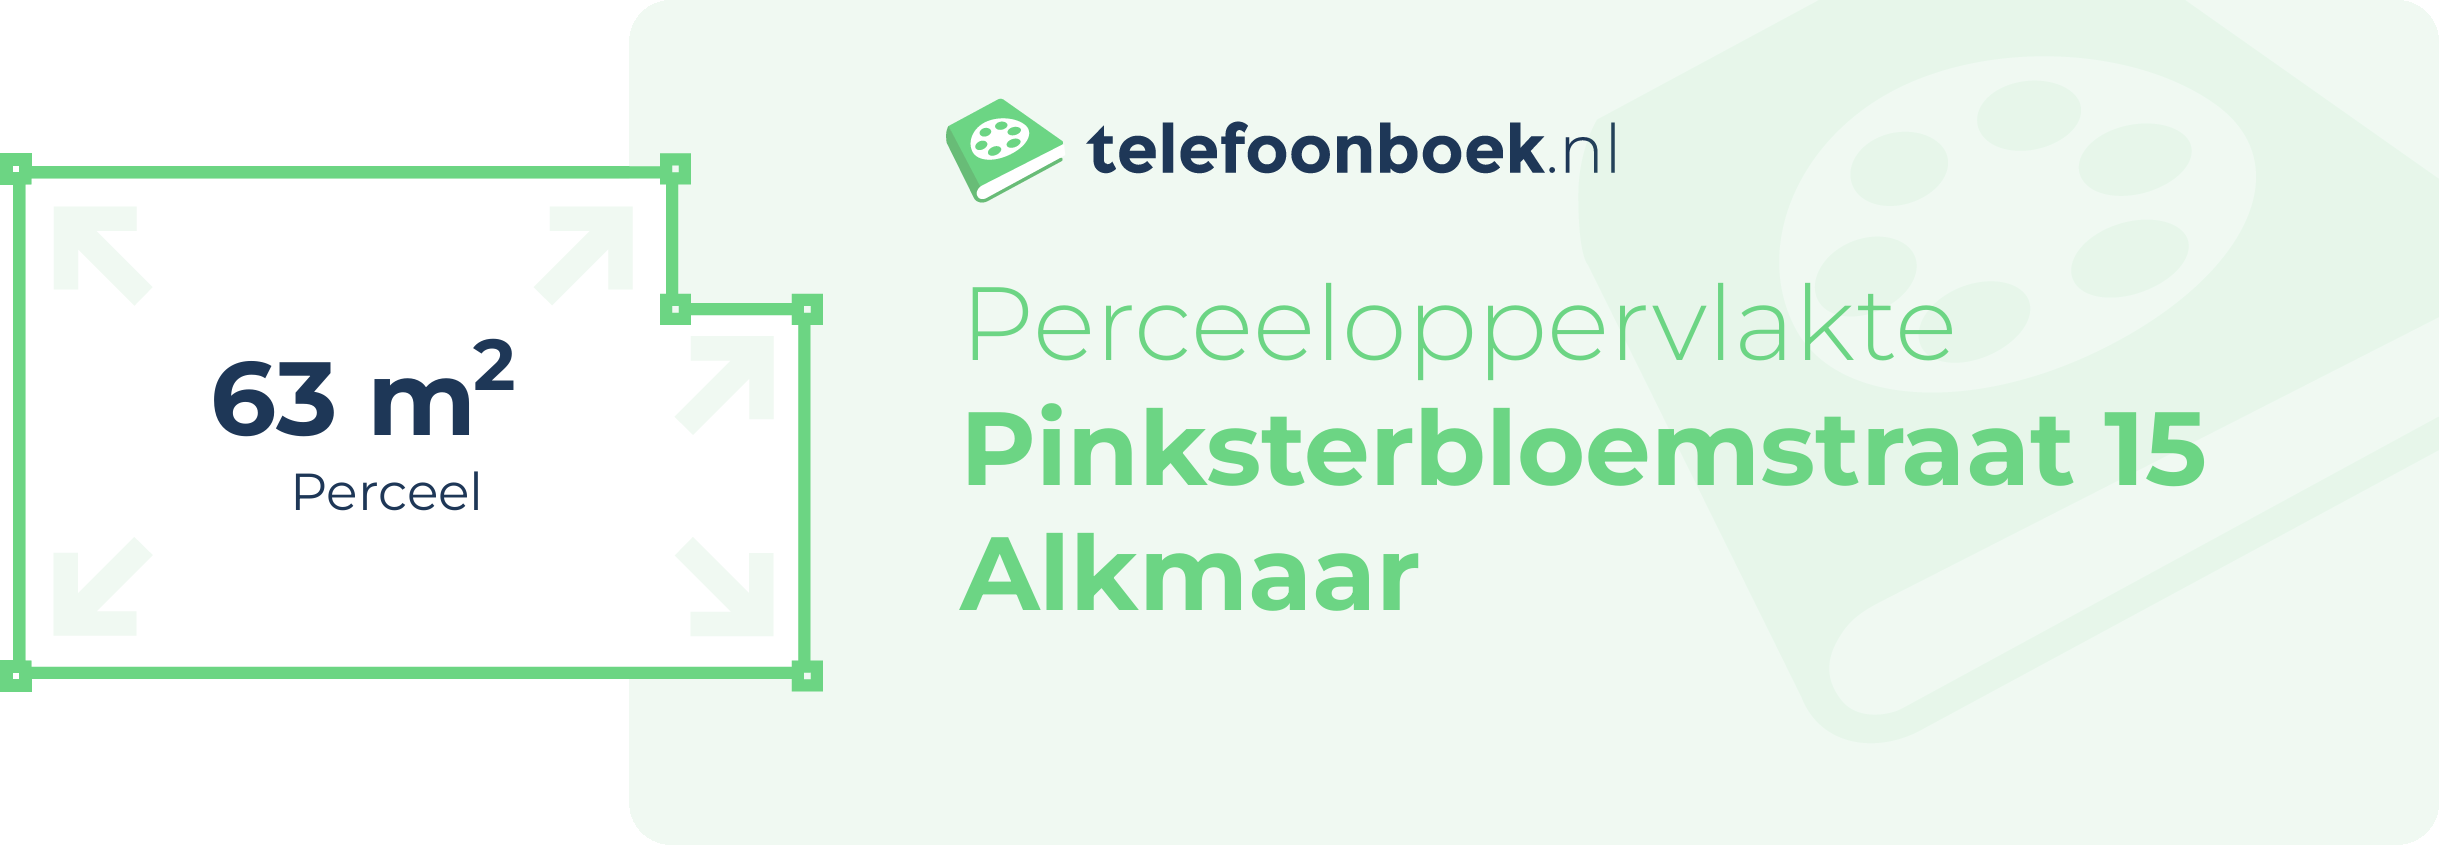 Perceeloppervlakte Pinksterbloemstraat 15 Alkmaar